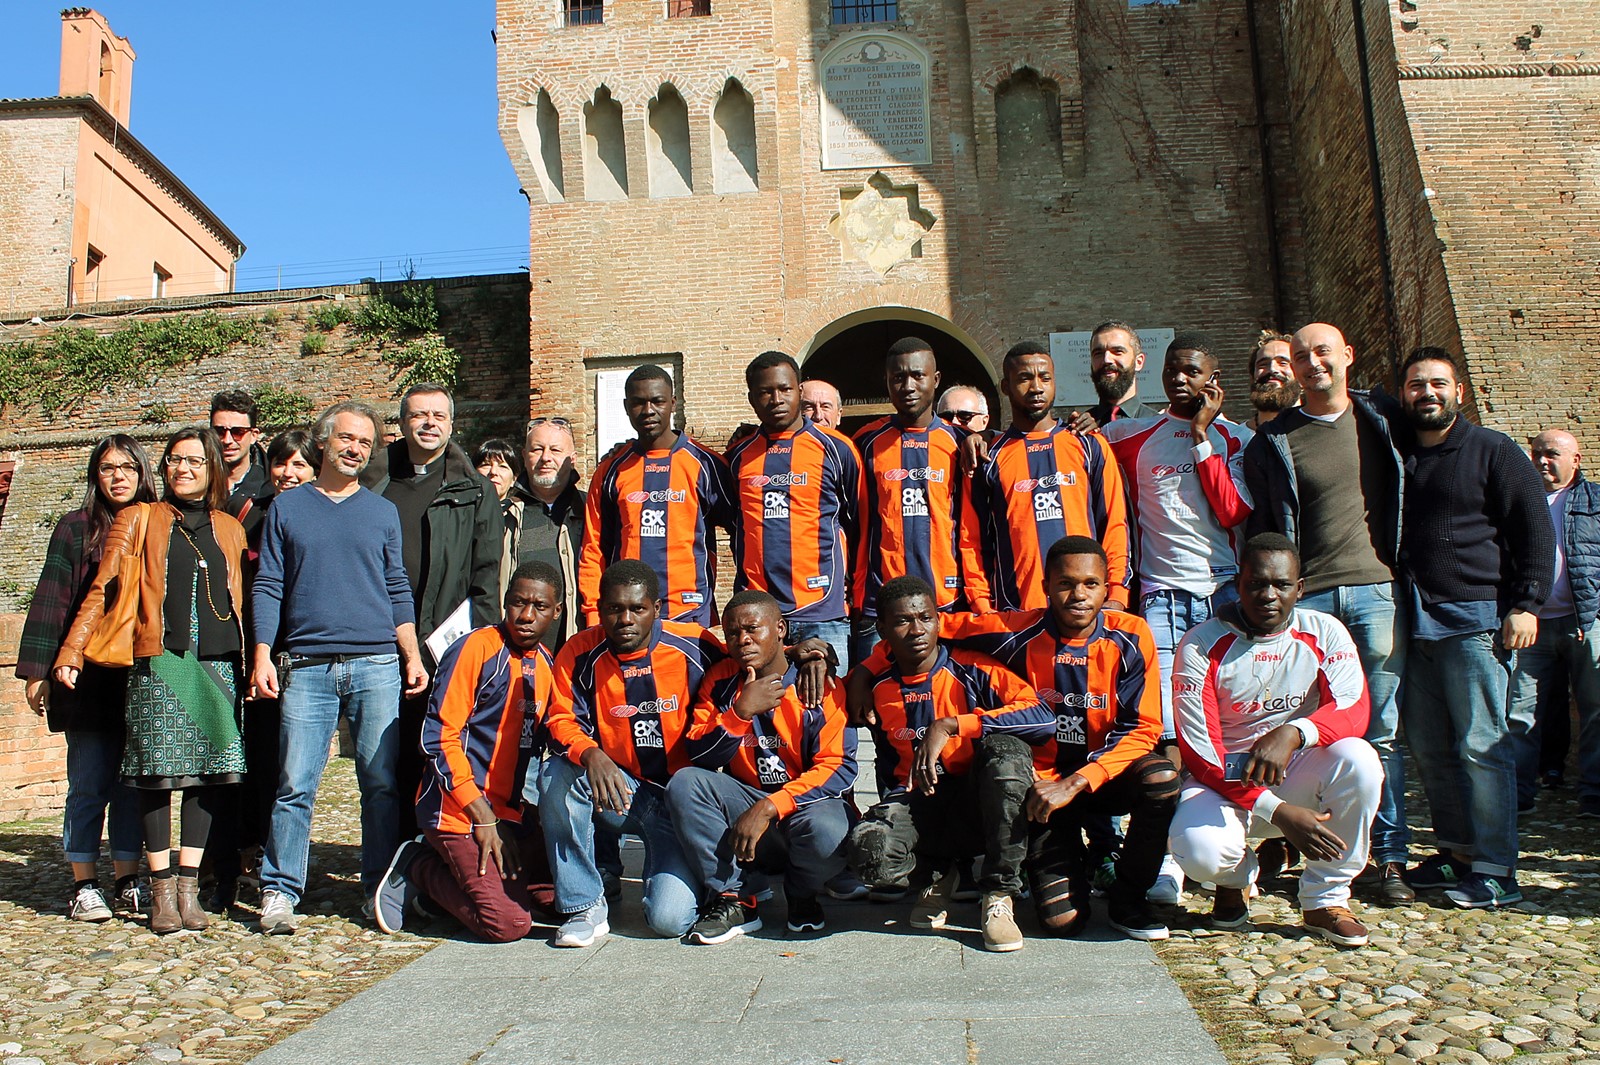 Ragazzi richiedenti asilo, a Lugo la nuova squadra di calcio